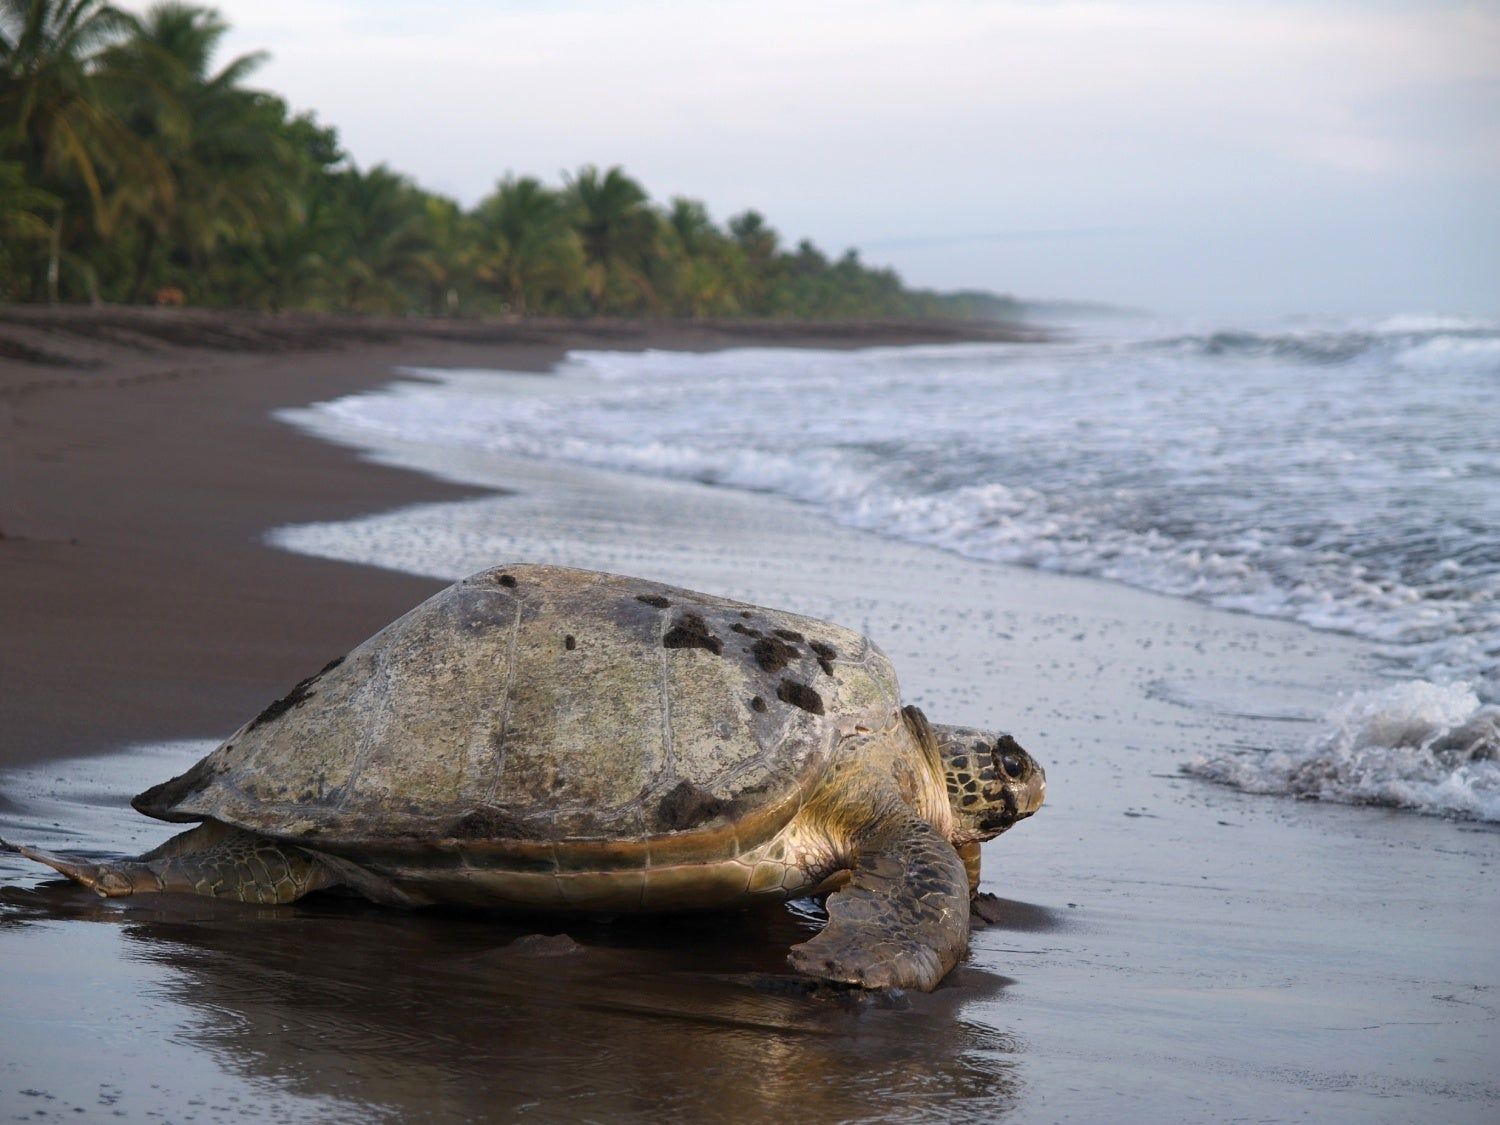 Comienza la época de avistamiento de tortugas de Costa Rica - Viajar